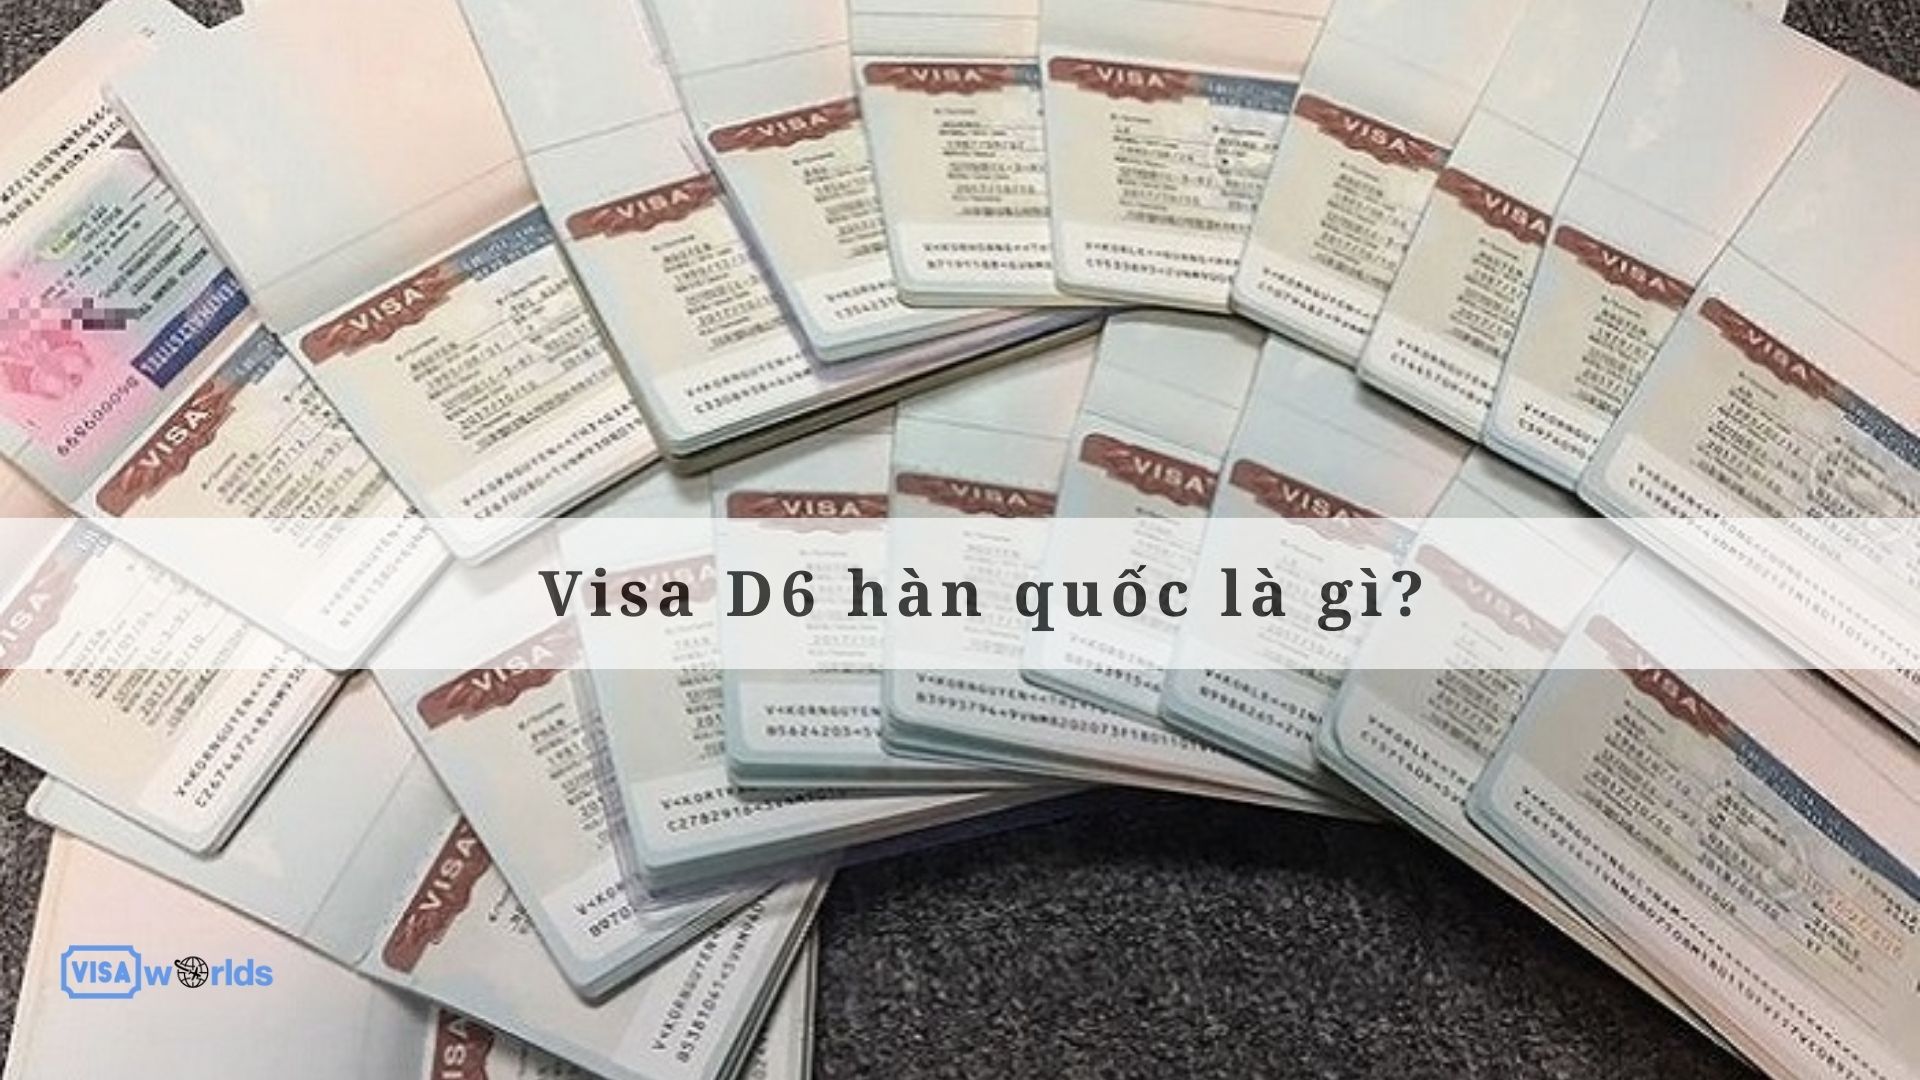 Visa D6 hàn quốc là gì